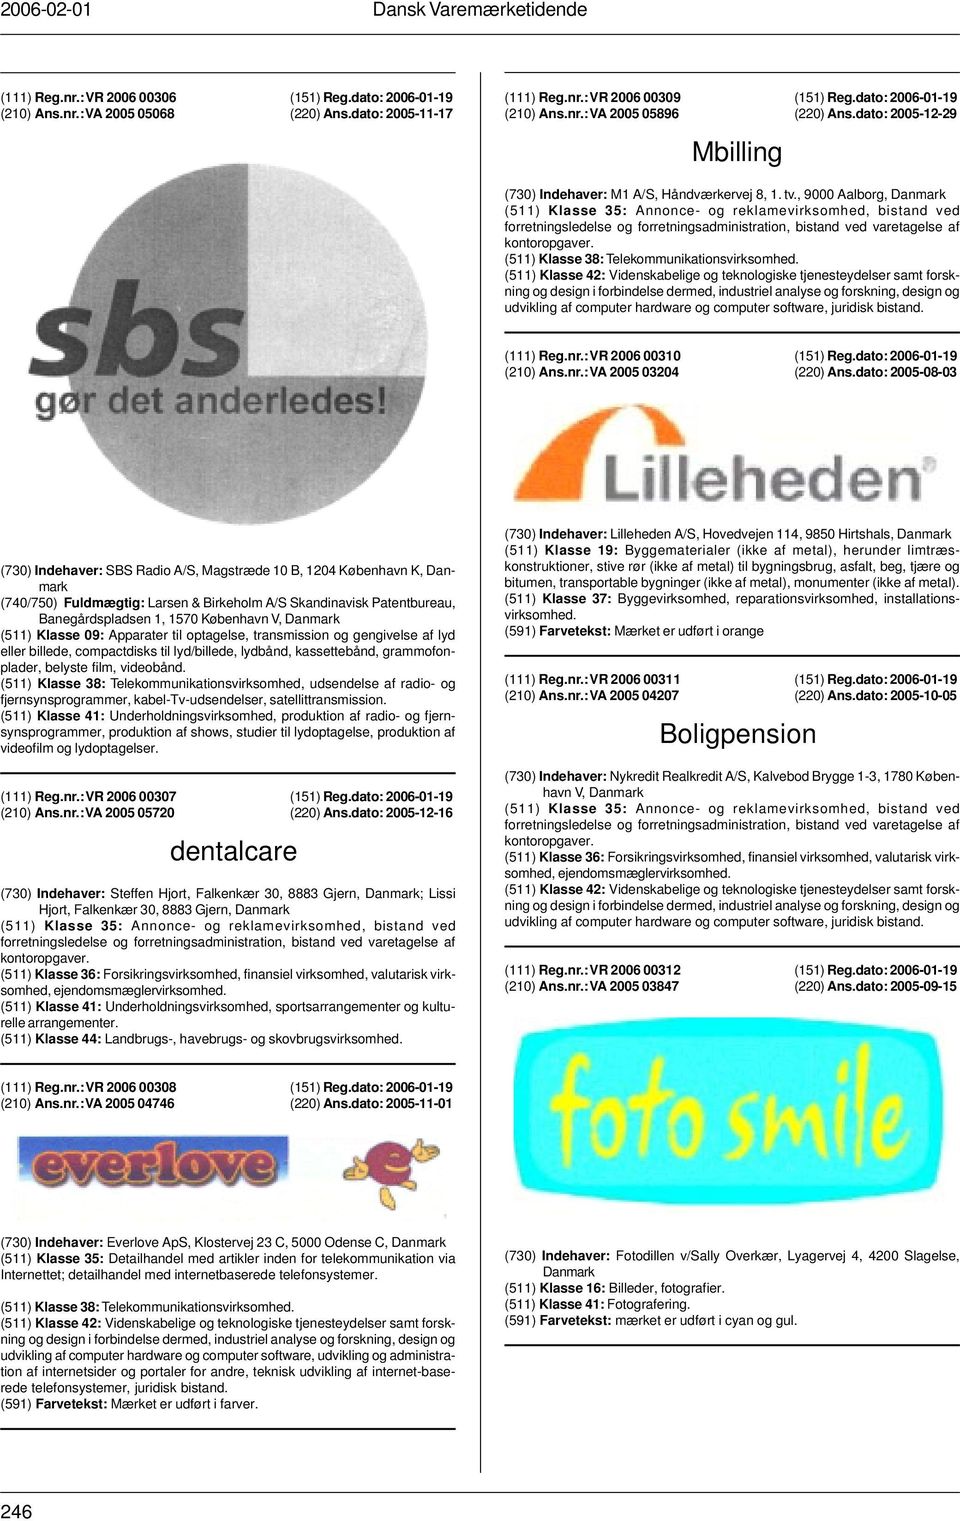 , 9000 Aalborg, (511) Klasse 35: Annonce- og reklamevirksomhed, bistand ved forretningsledelse og forretningsadministration, bistand ved varetagelse af kontoropgaver.